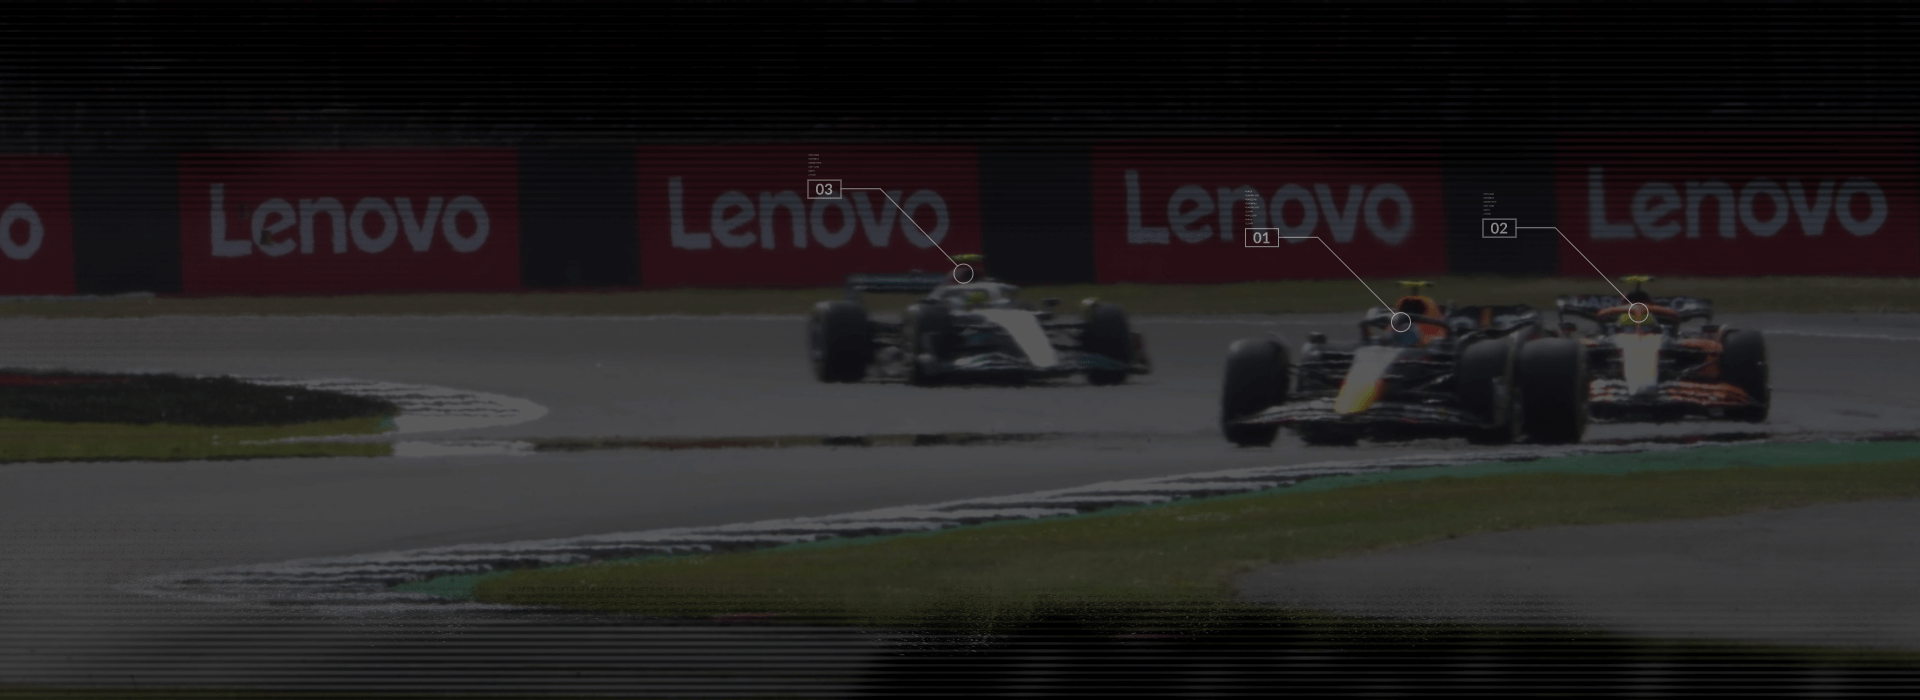 3 vetture di F1 su una pista con striscioni Lenovo sullo sfondo